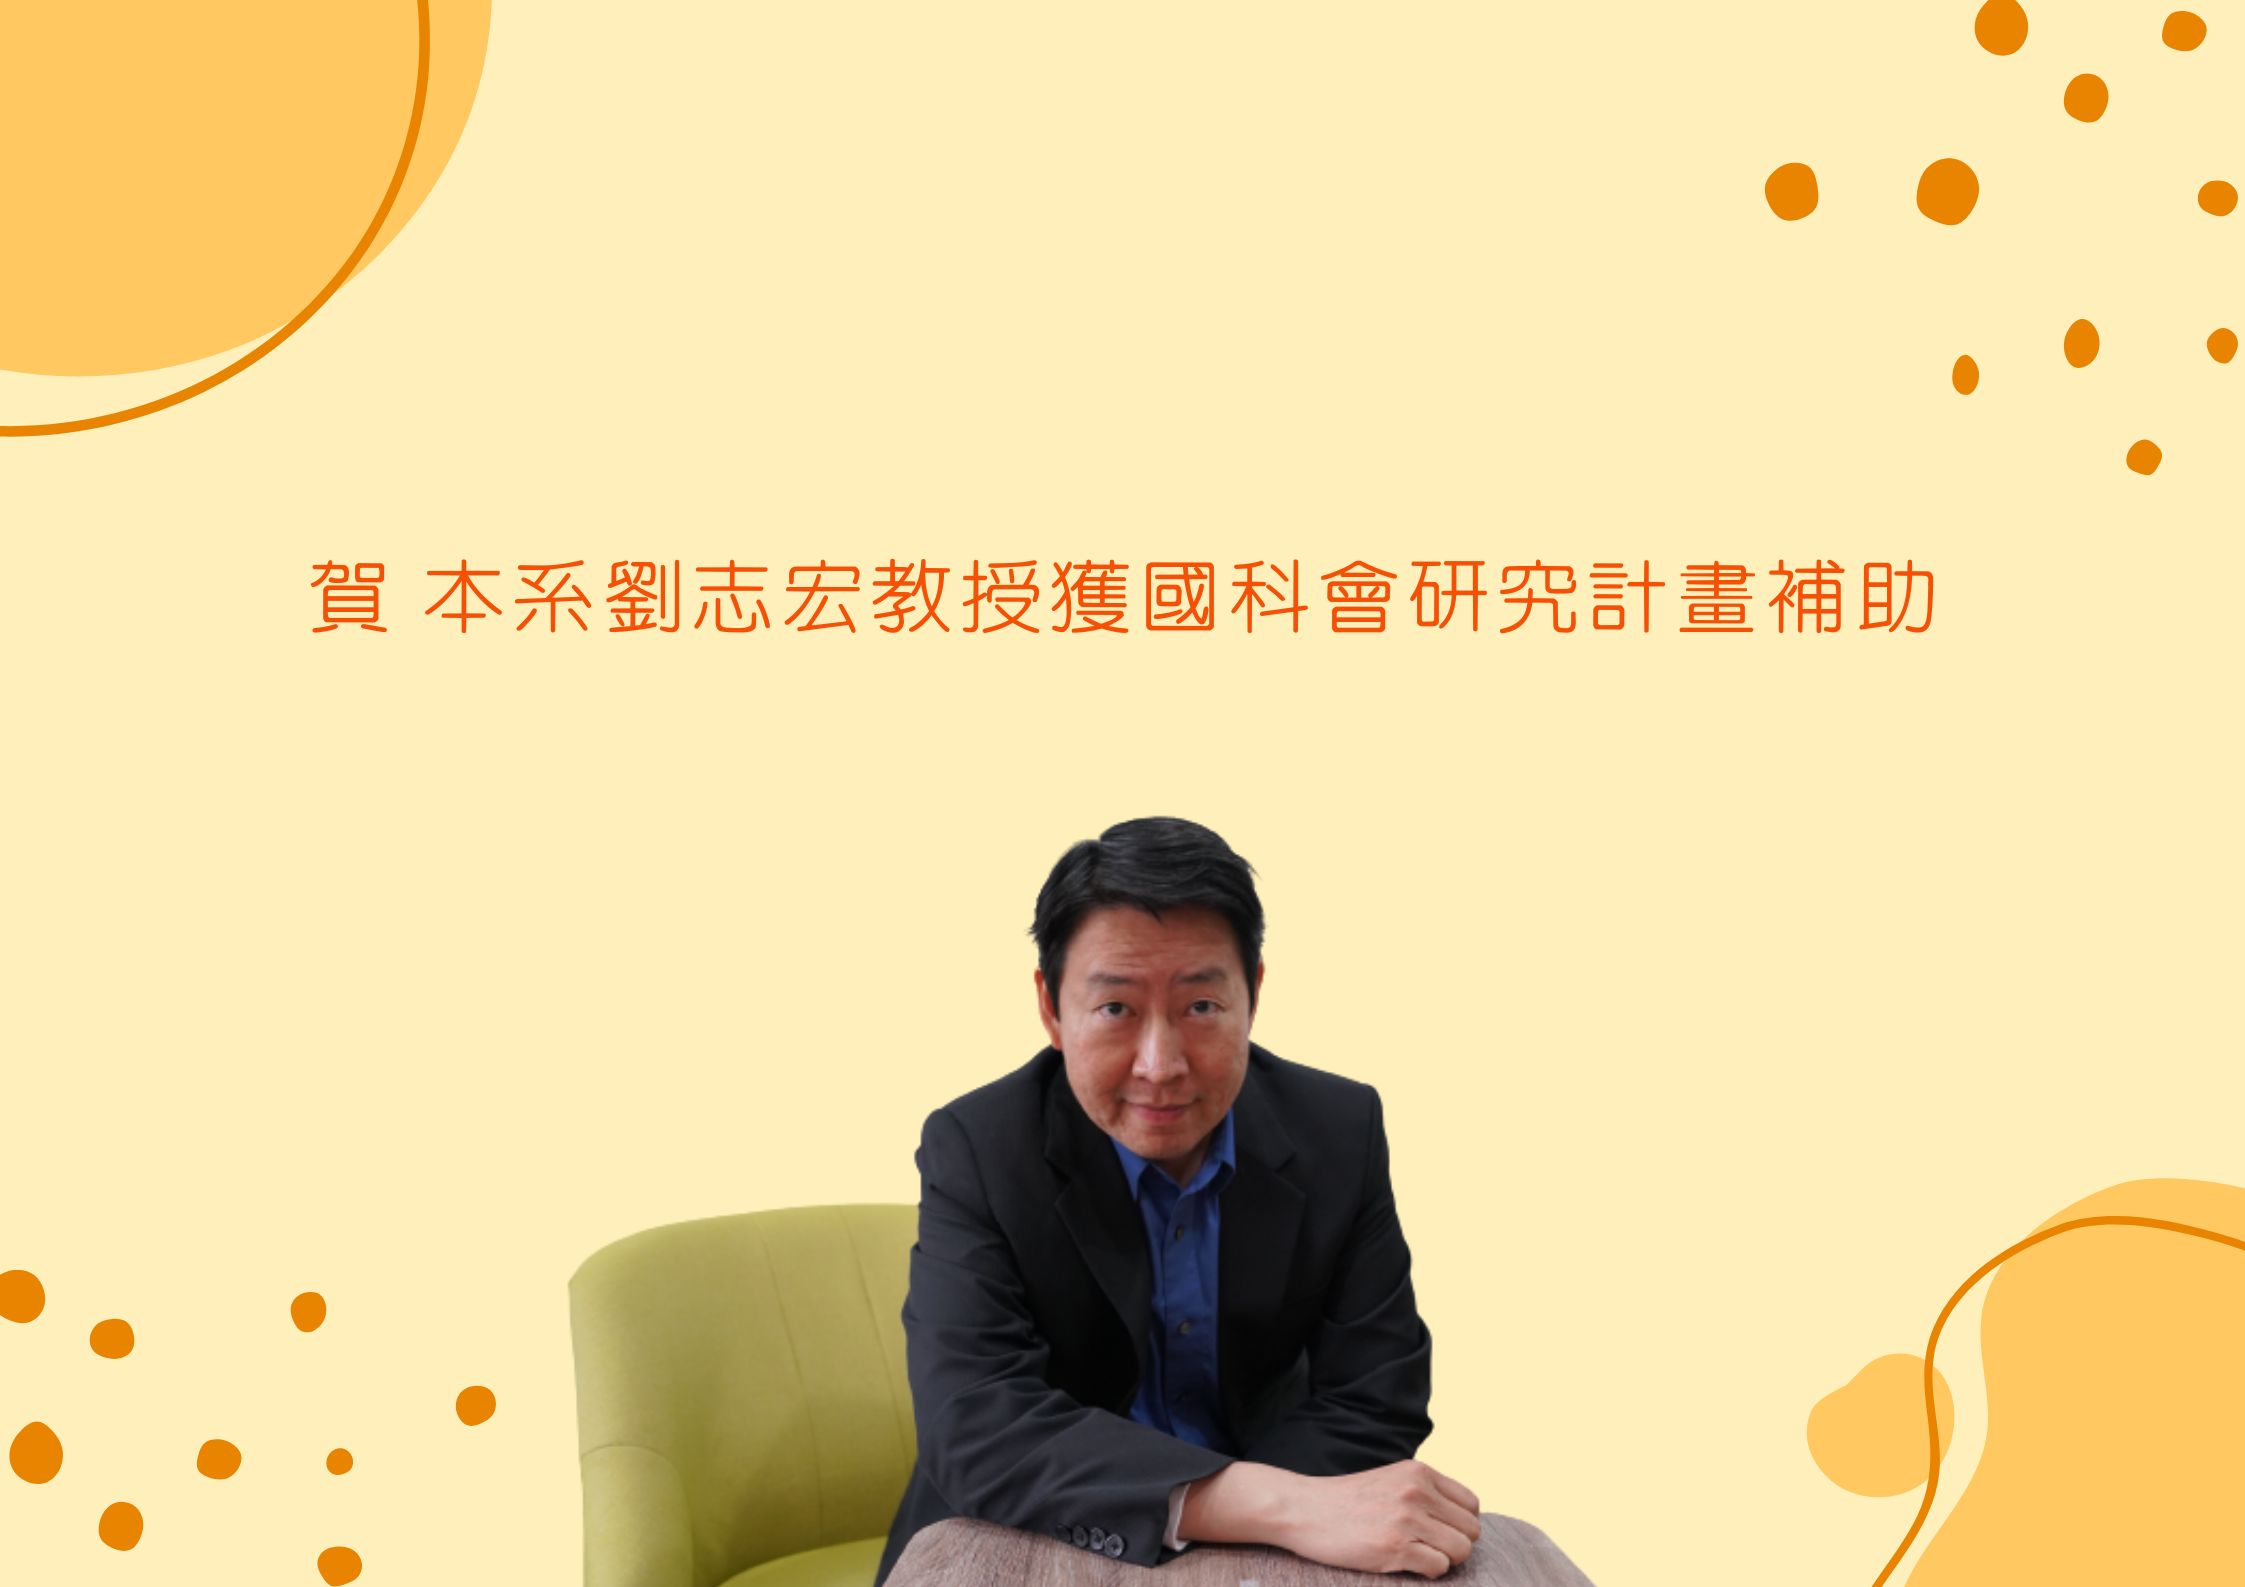 恭賀 劉志宏教授榮獲國科會研究計畫補助